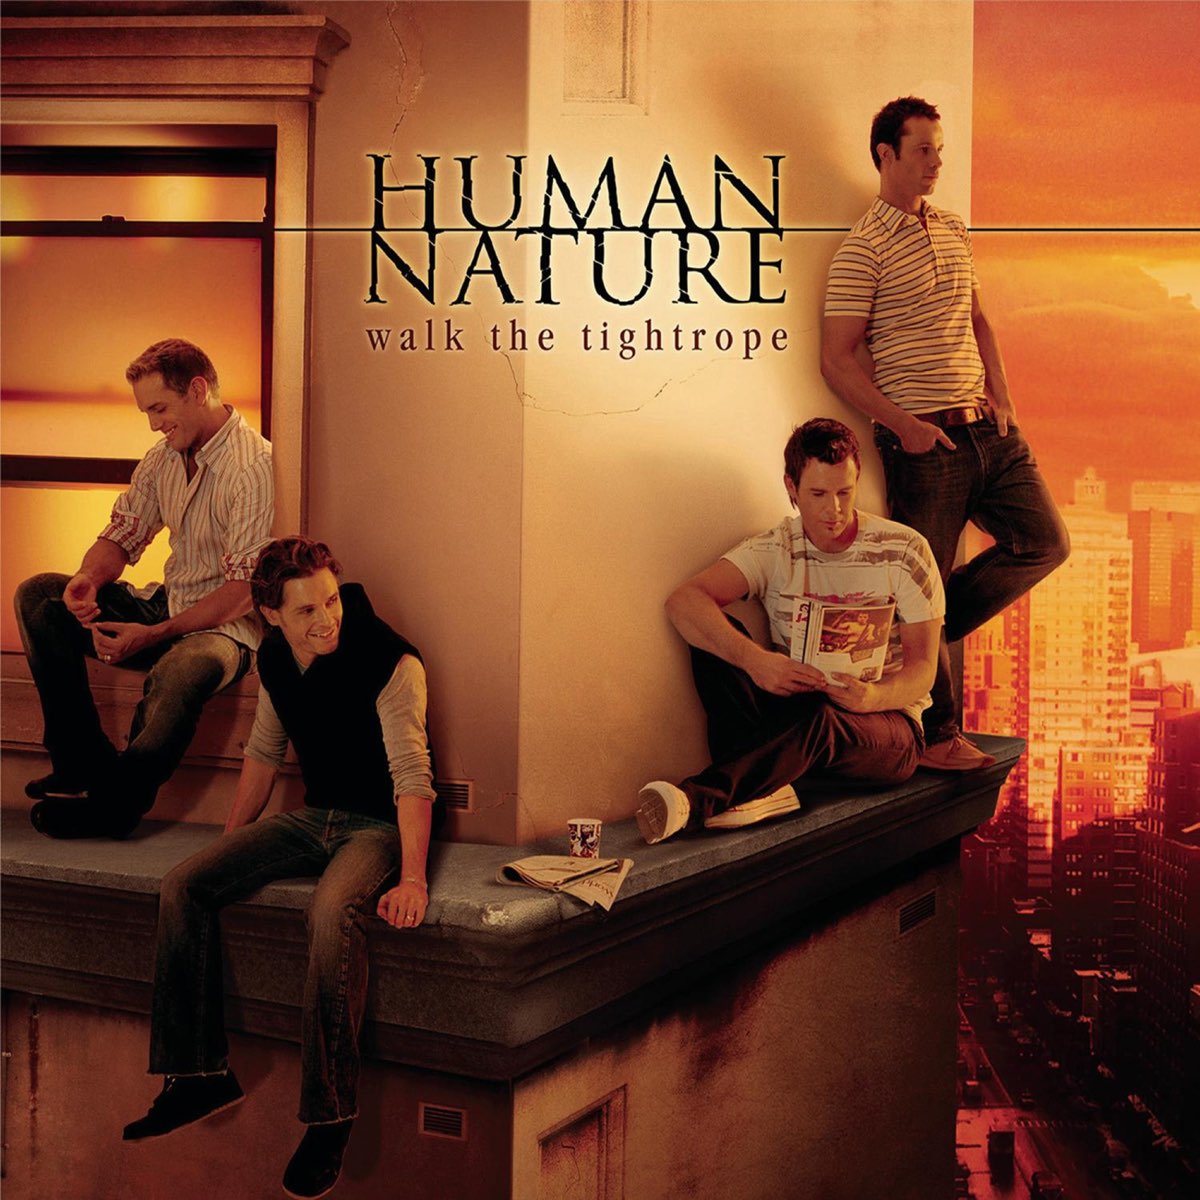 Natural last. Human nature – Human nature. Human альбомы. Human nature слушать. Фото обложки песни Human.